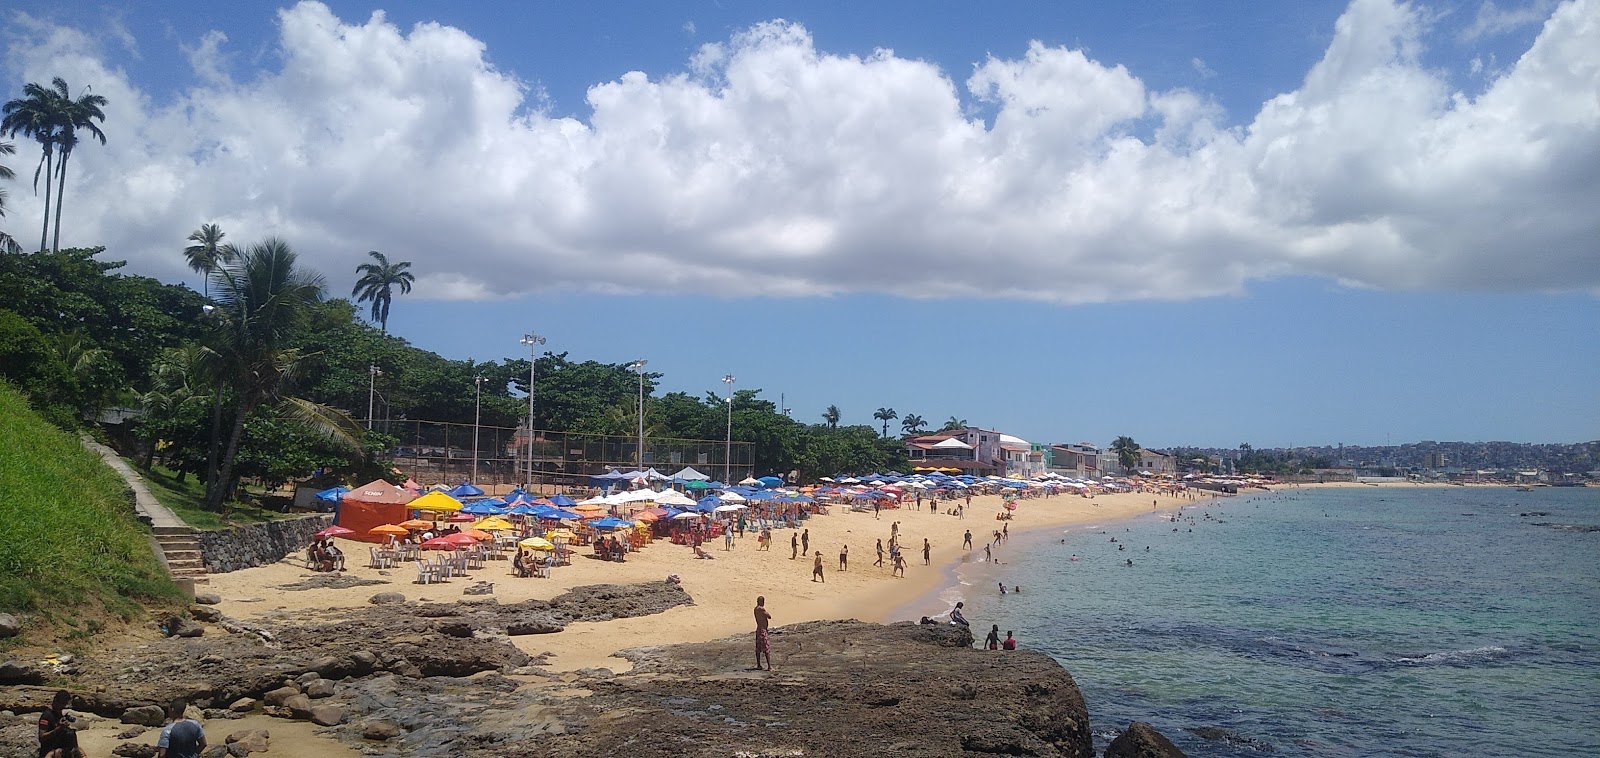 Zdjęcie Praia da Boa Viagem - popularne miejsce wśród znawców relaksu